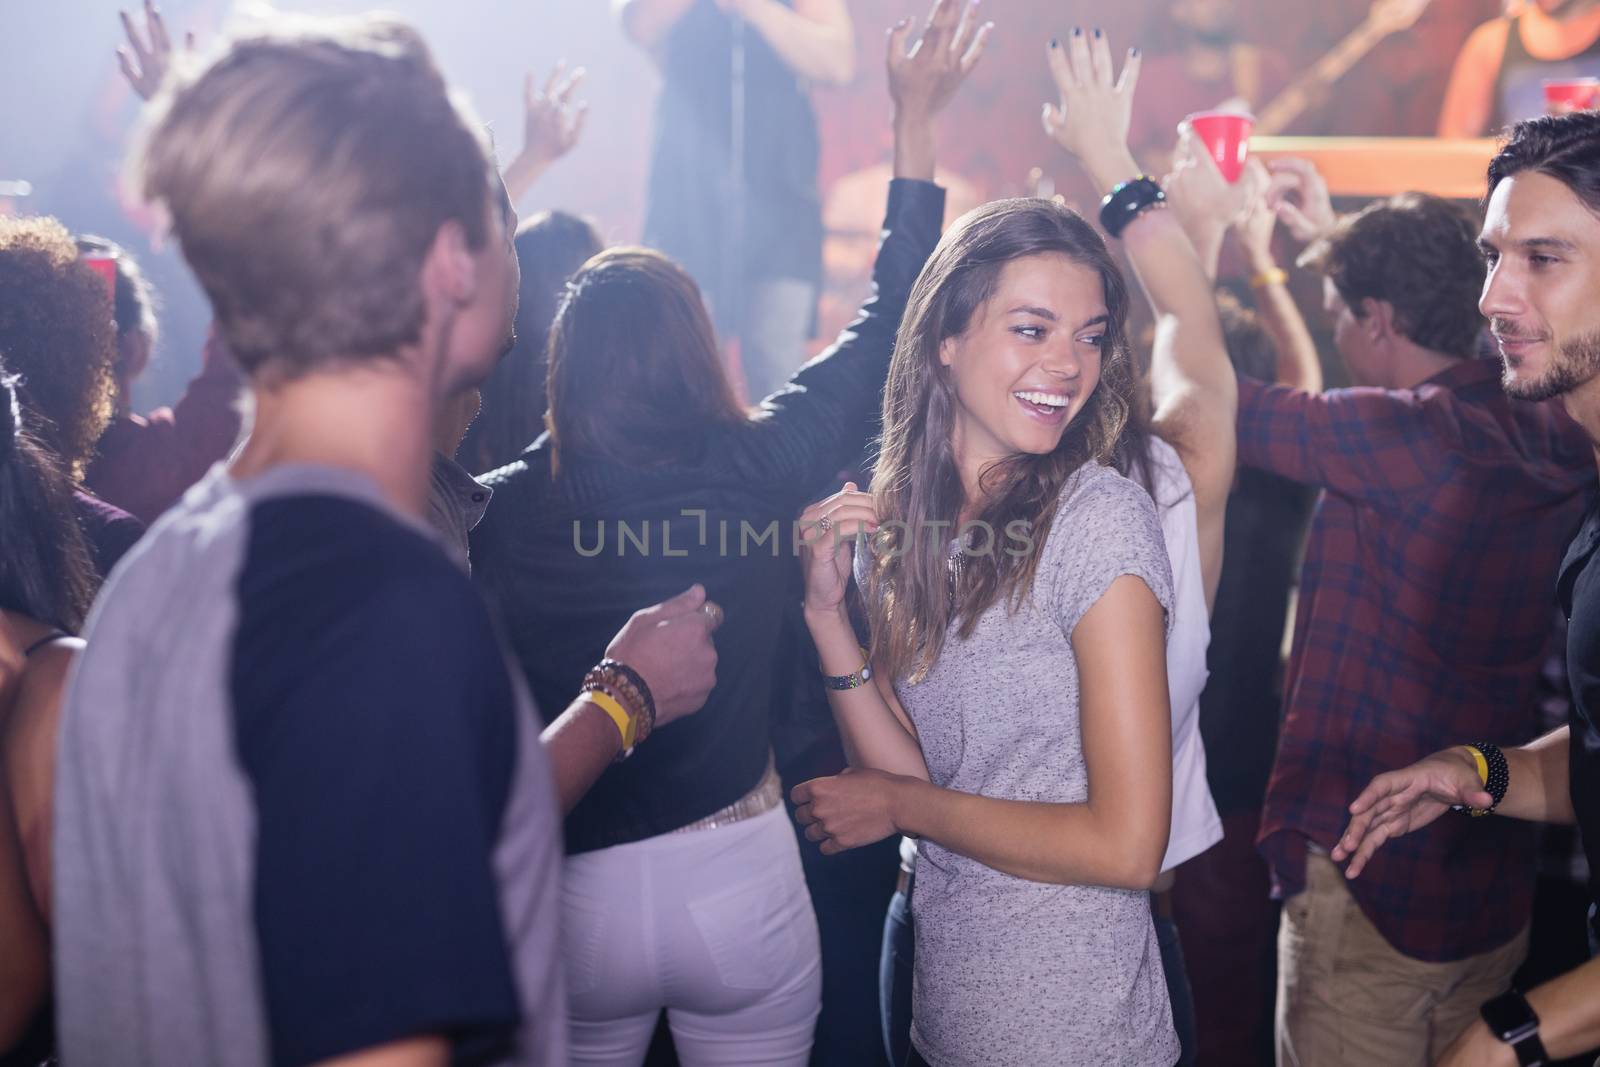 Happy people enjoying music while dancing at nightclub